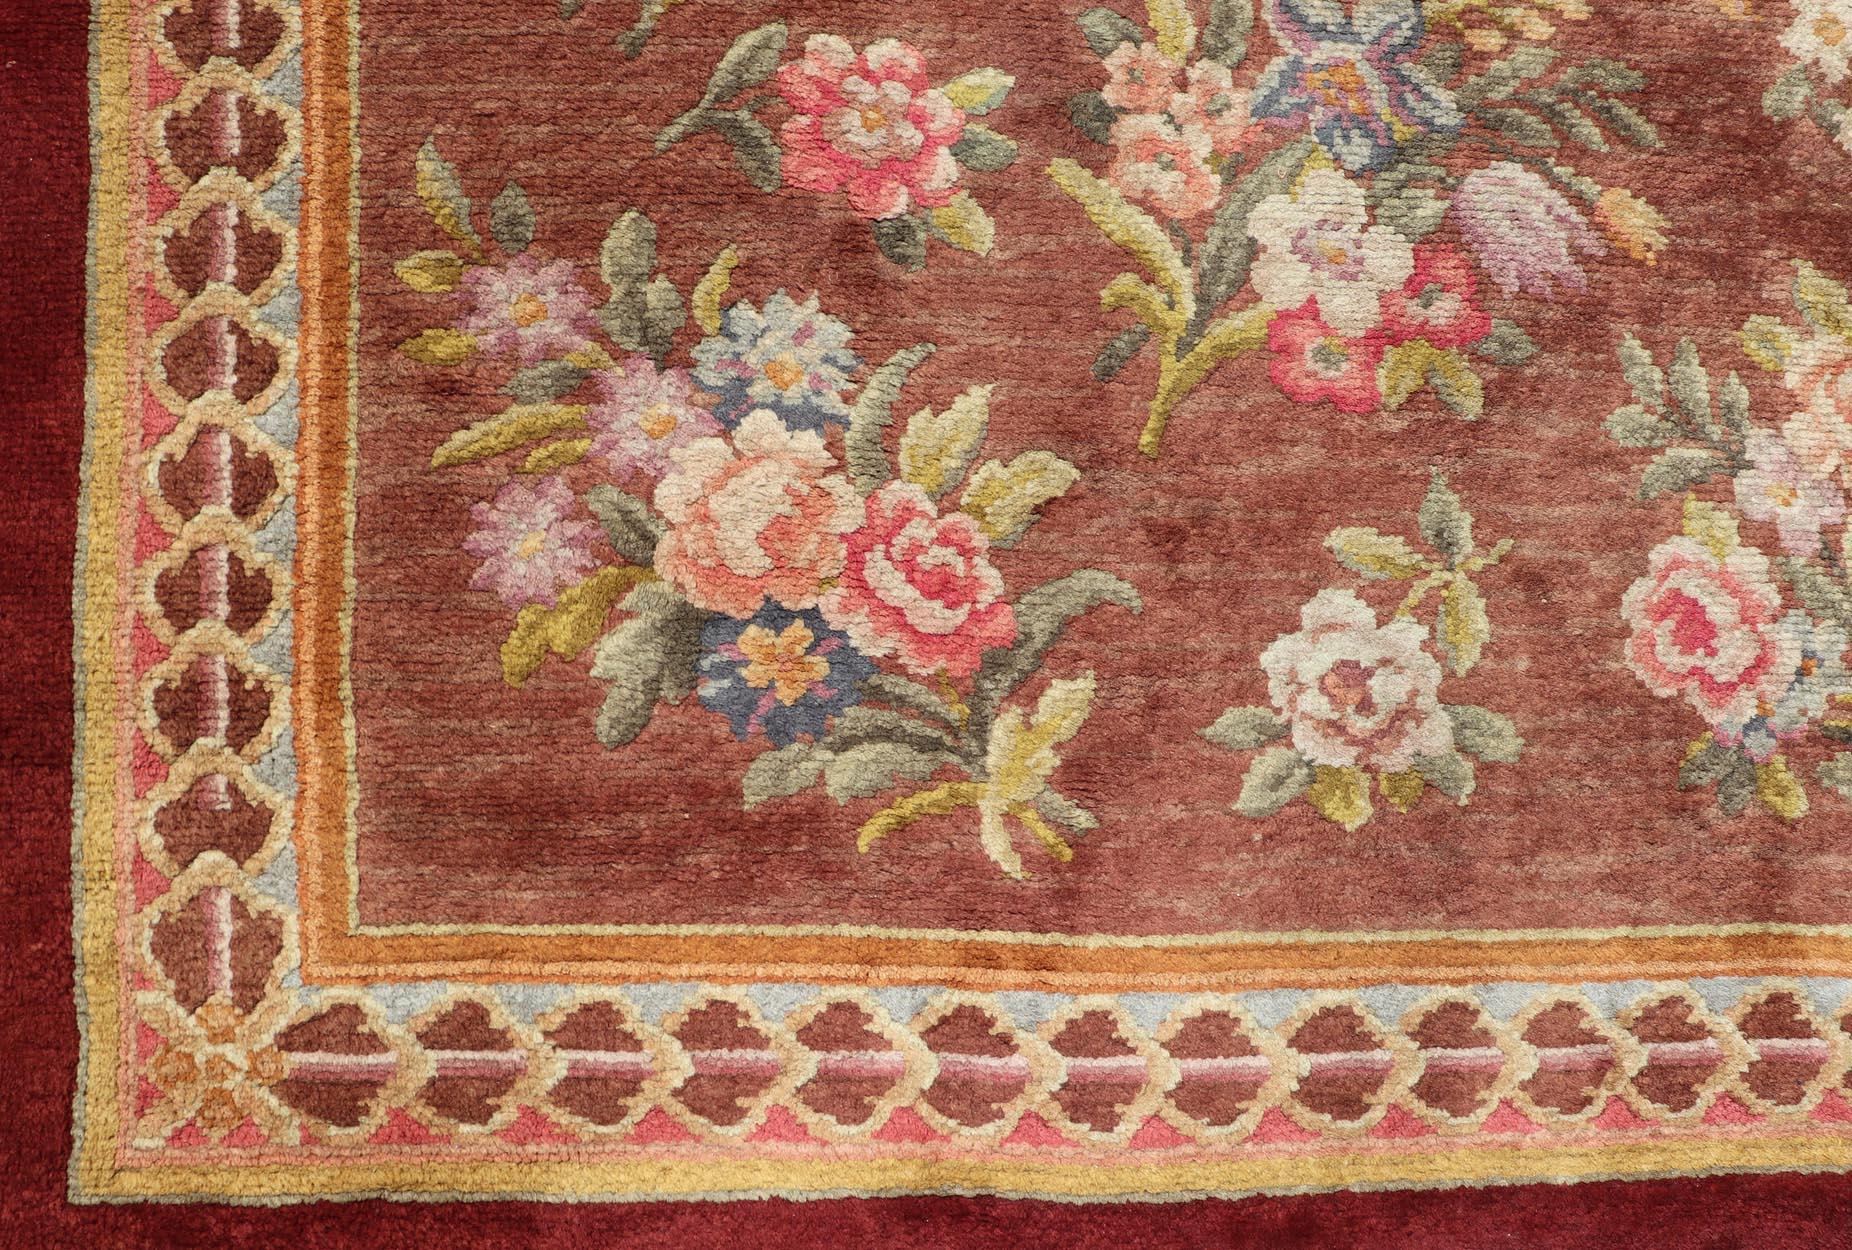 Dieser europäische Savonnerie-Teppich wurde im späten 19. Jahrhundert in Frankreich handgeknüpft. Der Teppich mit dem floralen Allover-Muster befand sich von 1948 bis Ende der 1980er Jahre im Besitz des Coca-Cola-Magnaten Robert W. Woodruff in